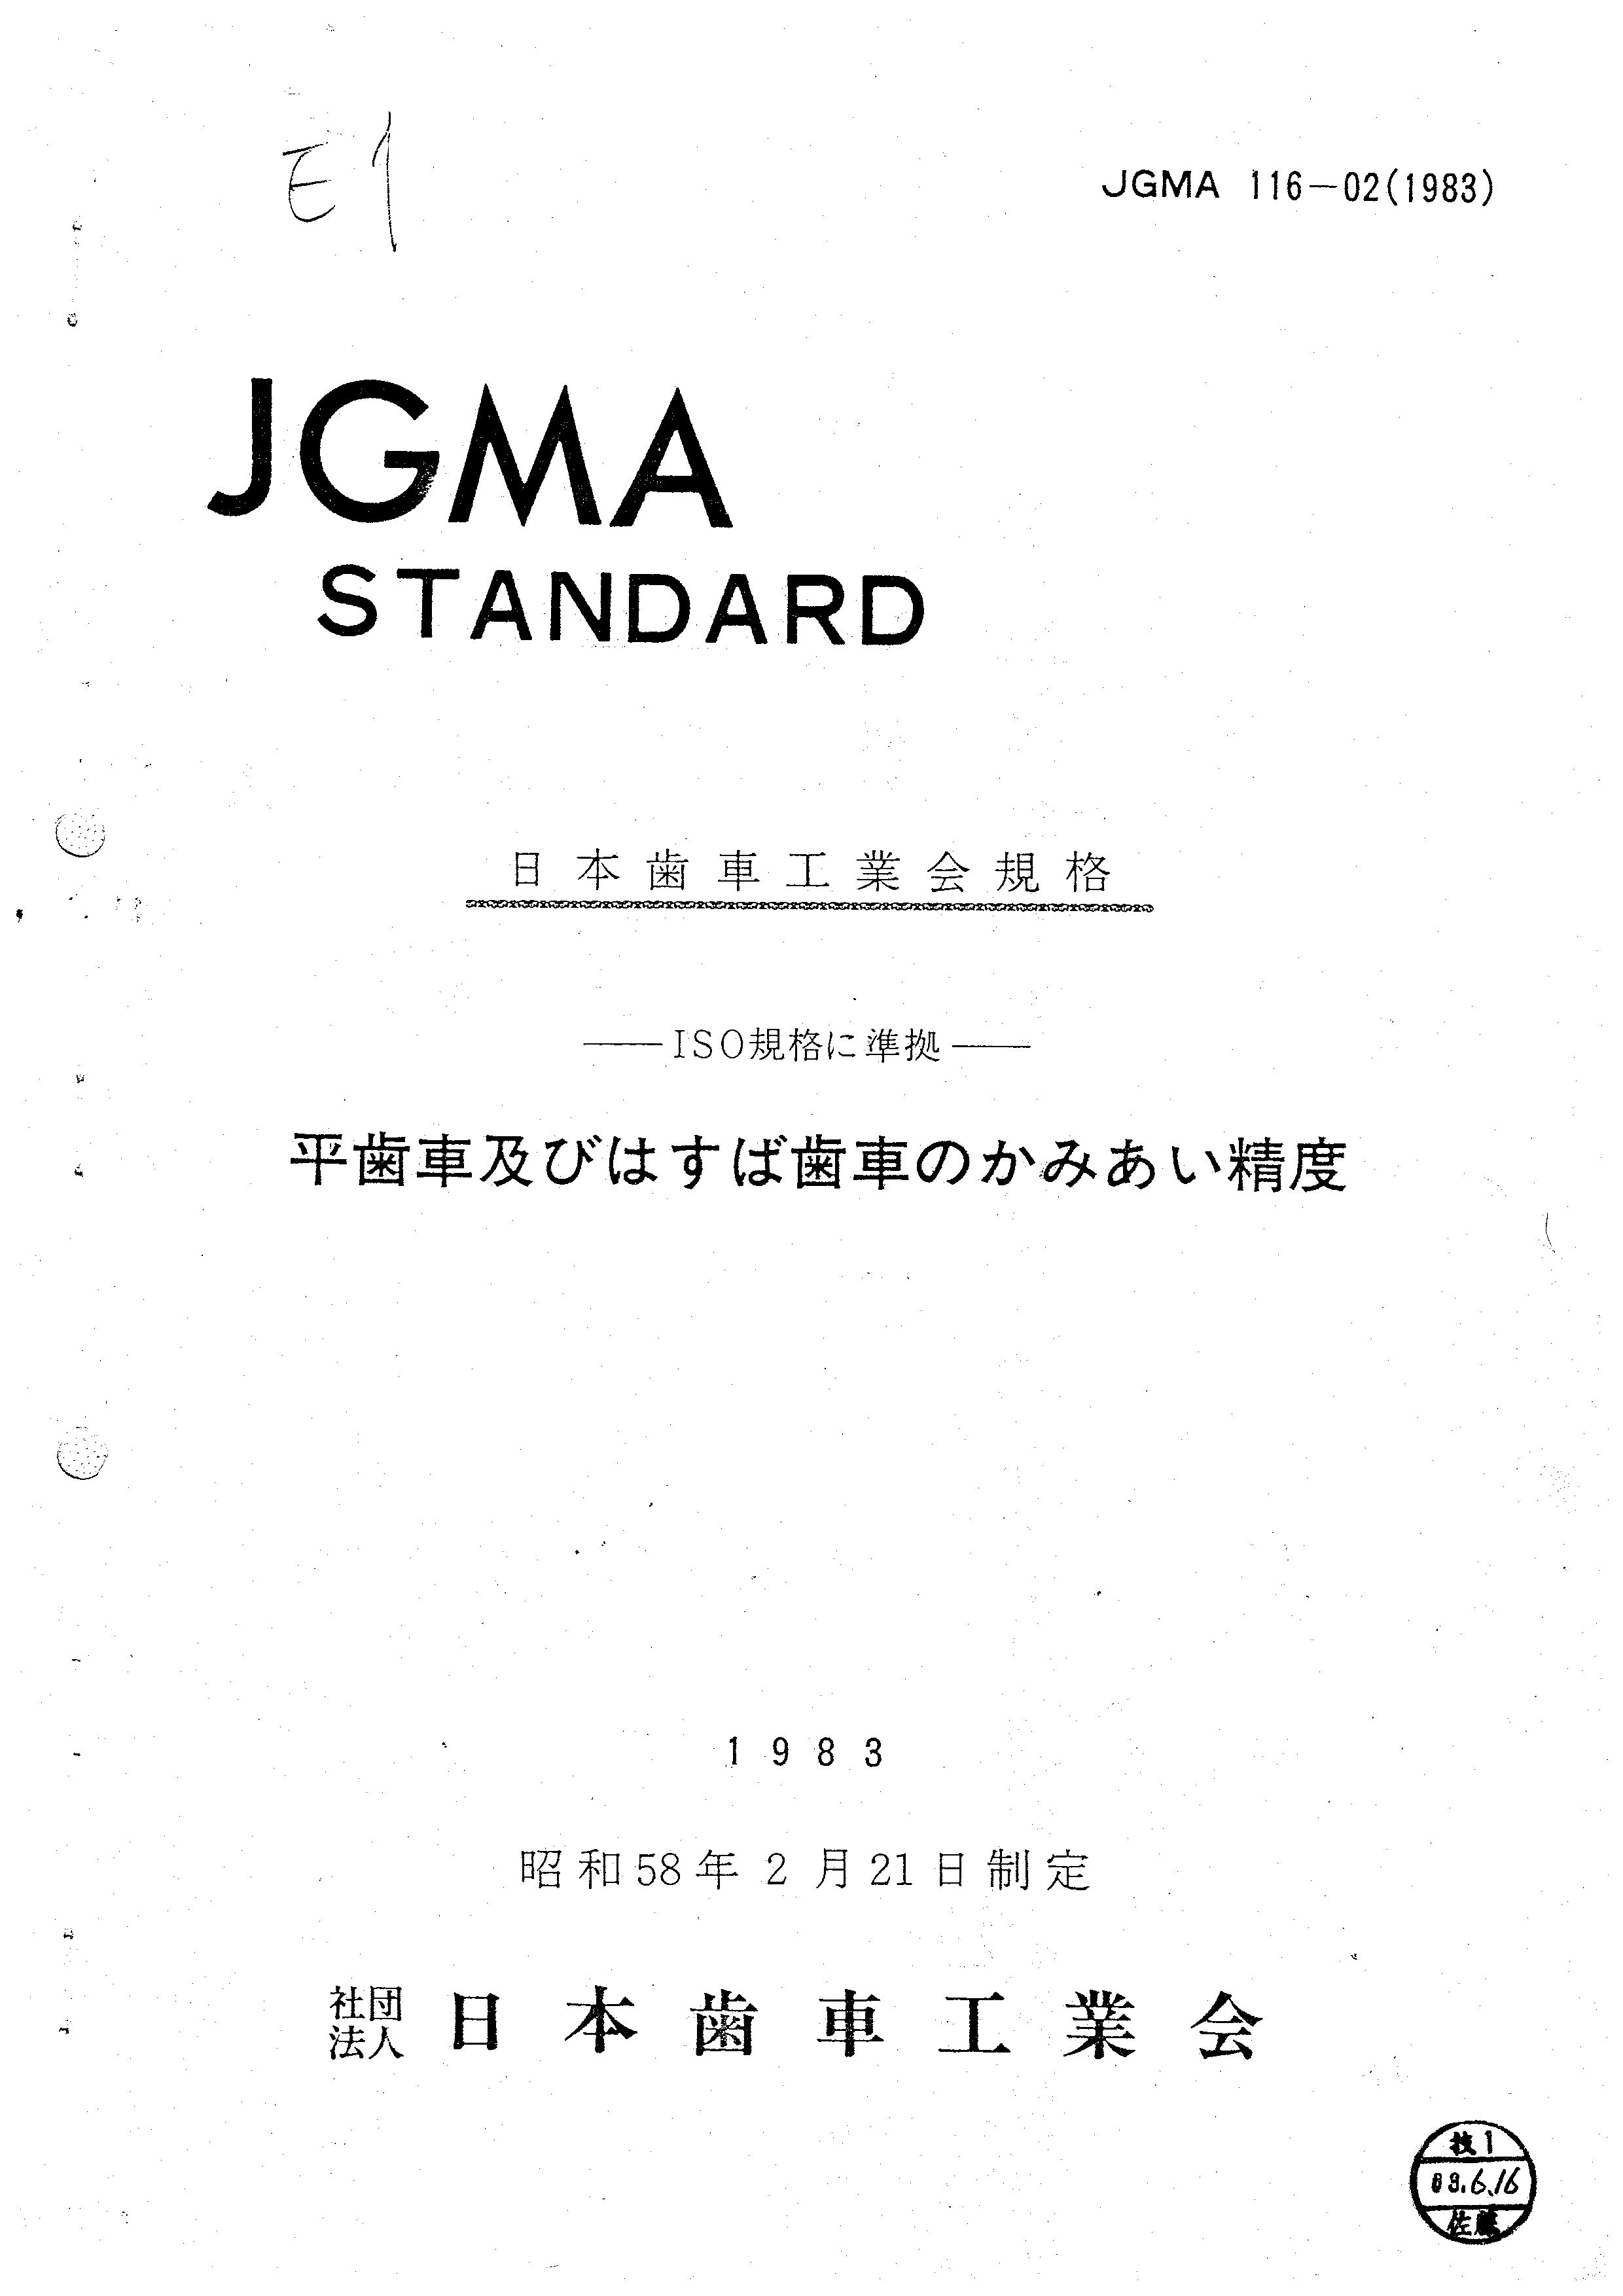 JGMA 116-02.jpg